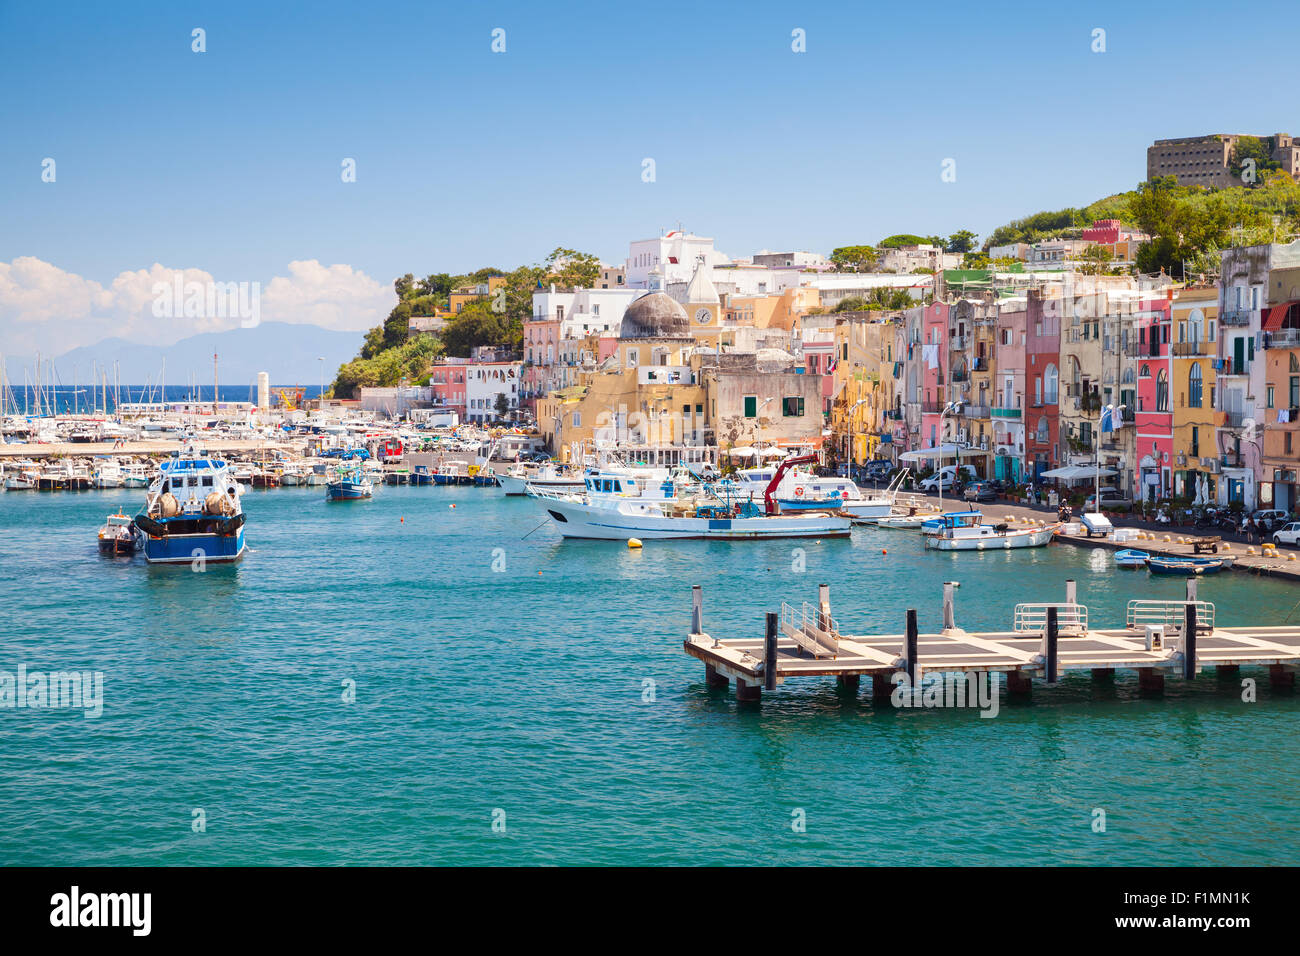 Kleine italienische Stadt Stadtbild mit bunten Häusern und Piers. Hafen von Procida Insel, Golf von Neapel, Italien Stockfoto